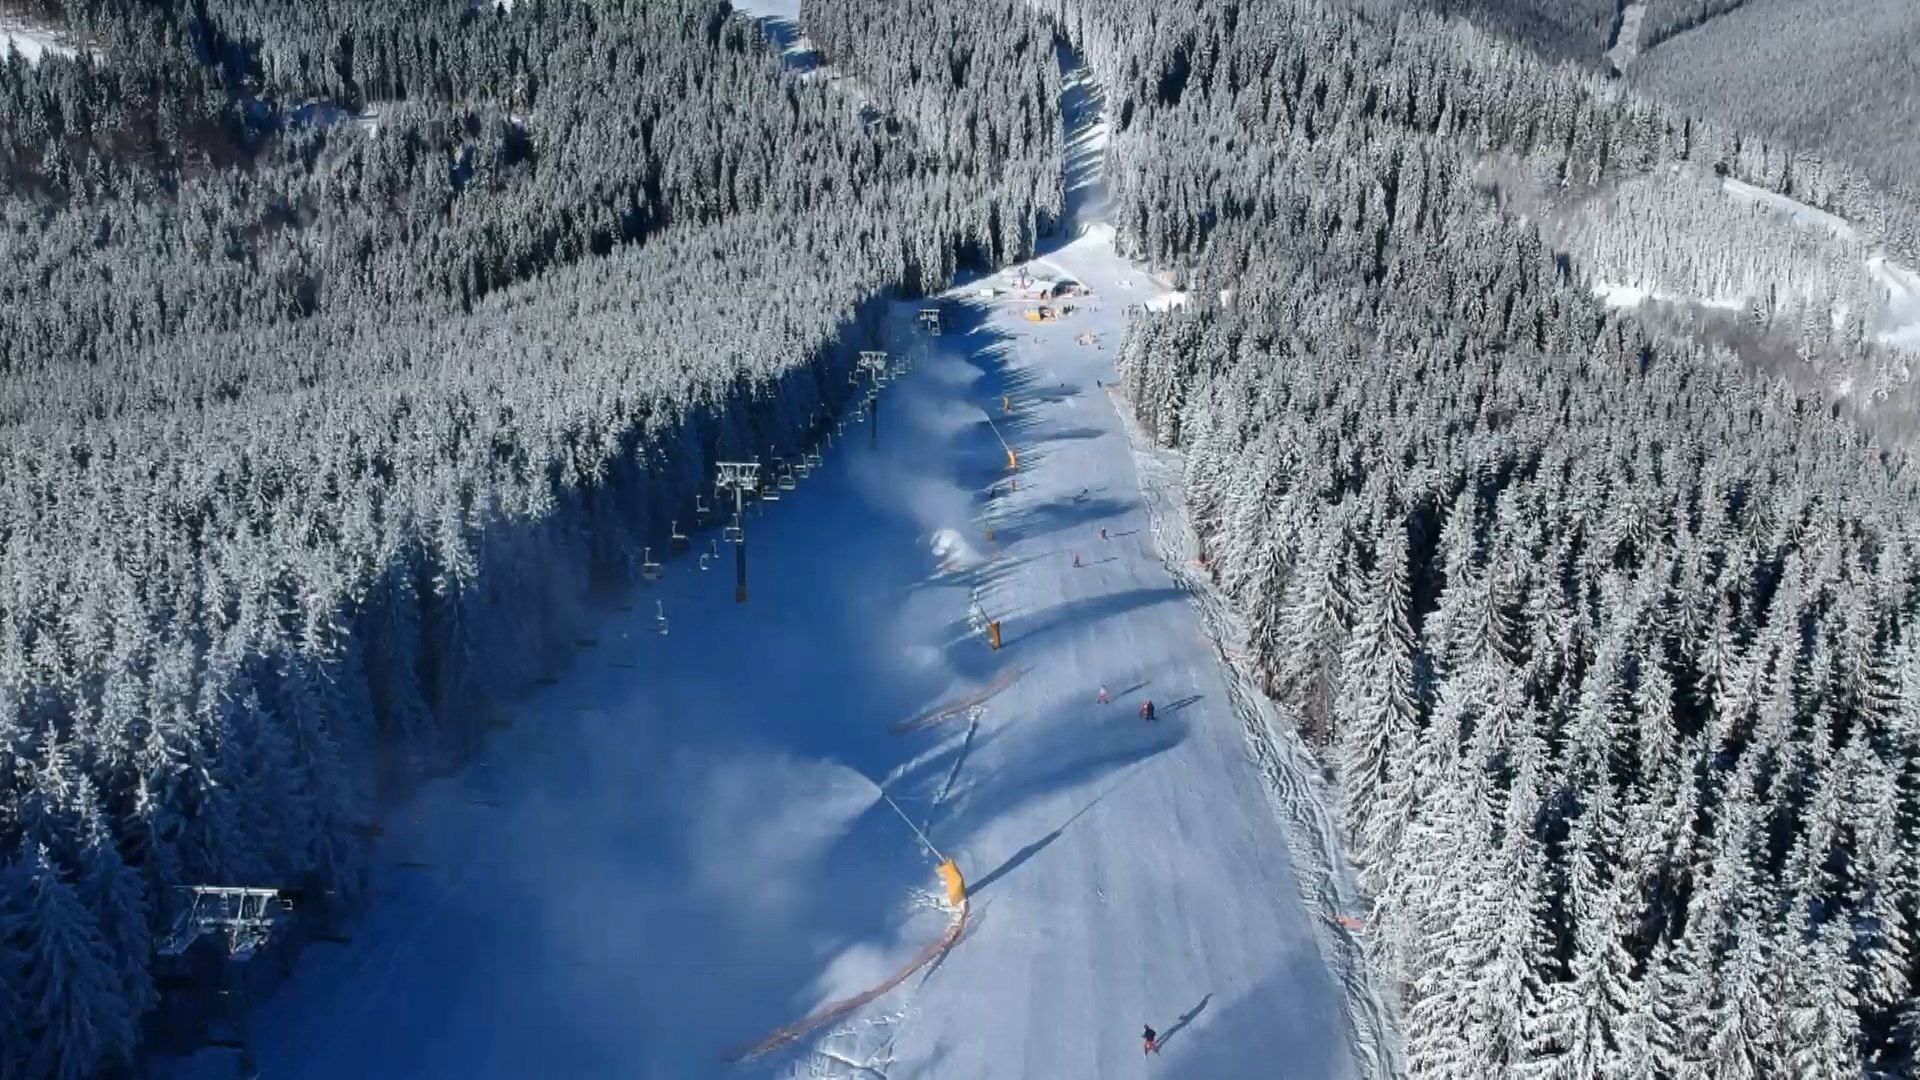 Гірськолижний курорт "Буковель" відкрив сезон катання - 1 грудня 2018 - Телеканал новин 24